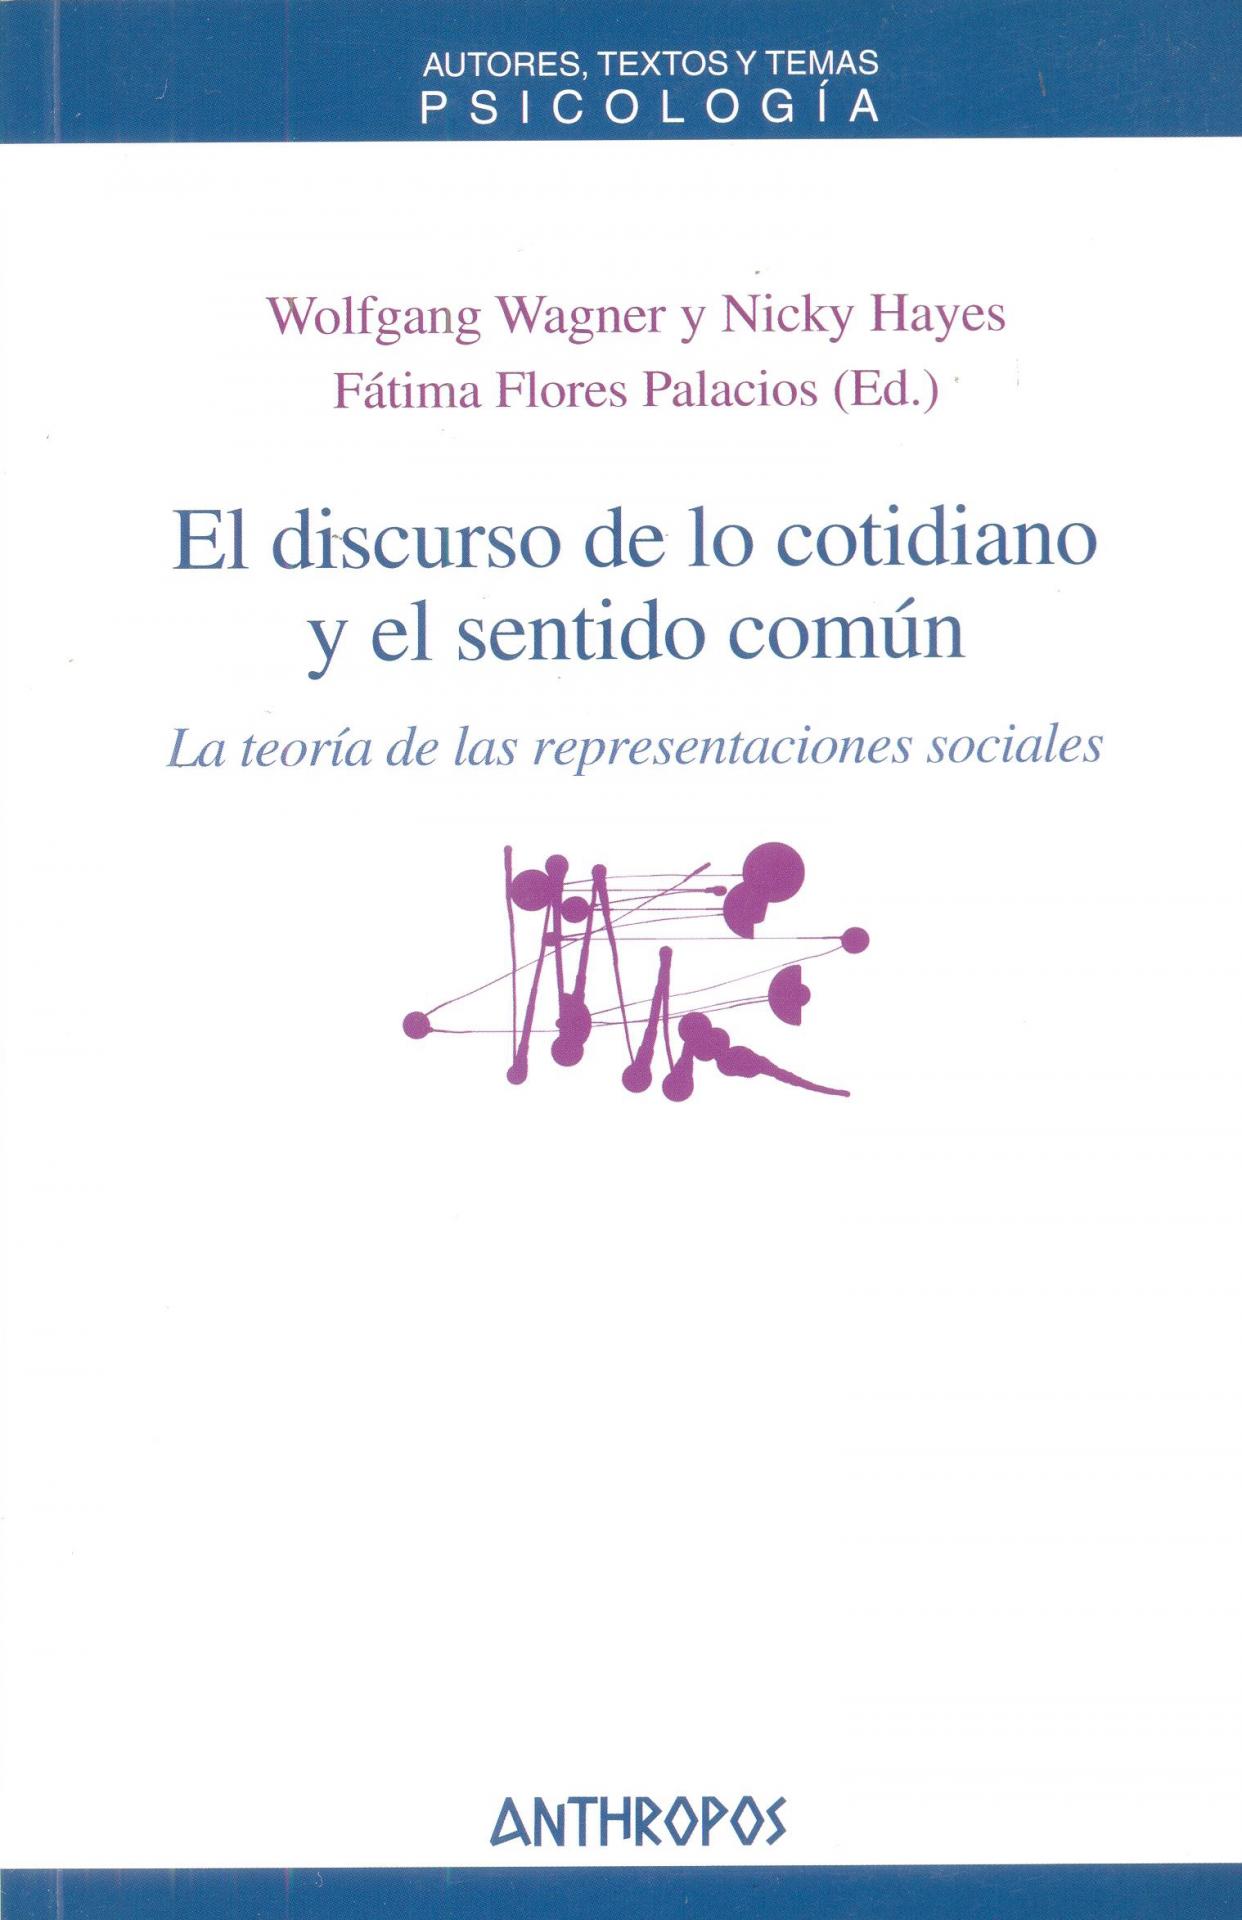 EL DISCURSO DE LO COTIDIANO Y EL SENTIDO COMÚN. La teoría de las representaciones sociales. Wagner, W.; Hayes, N.